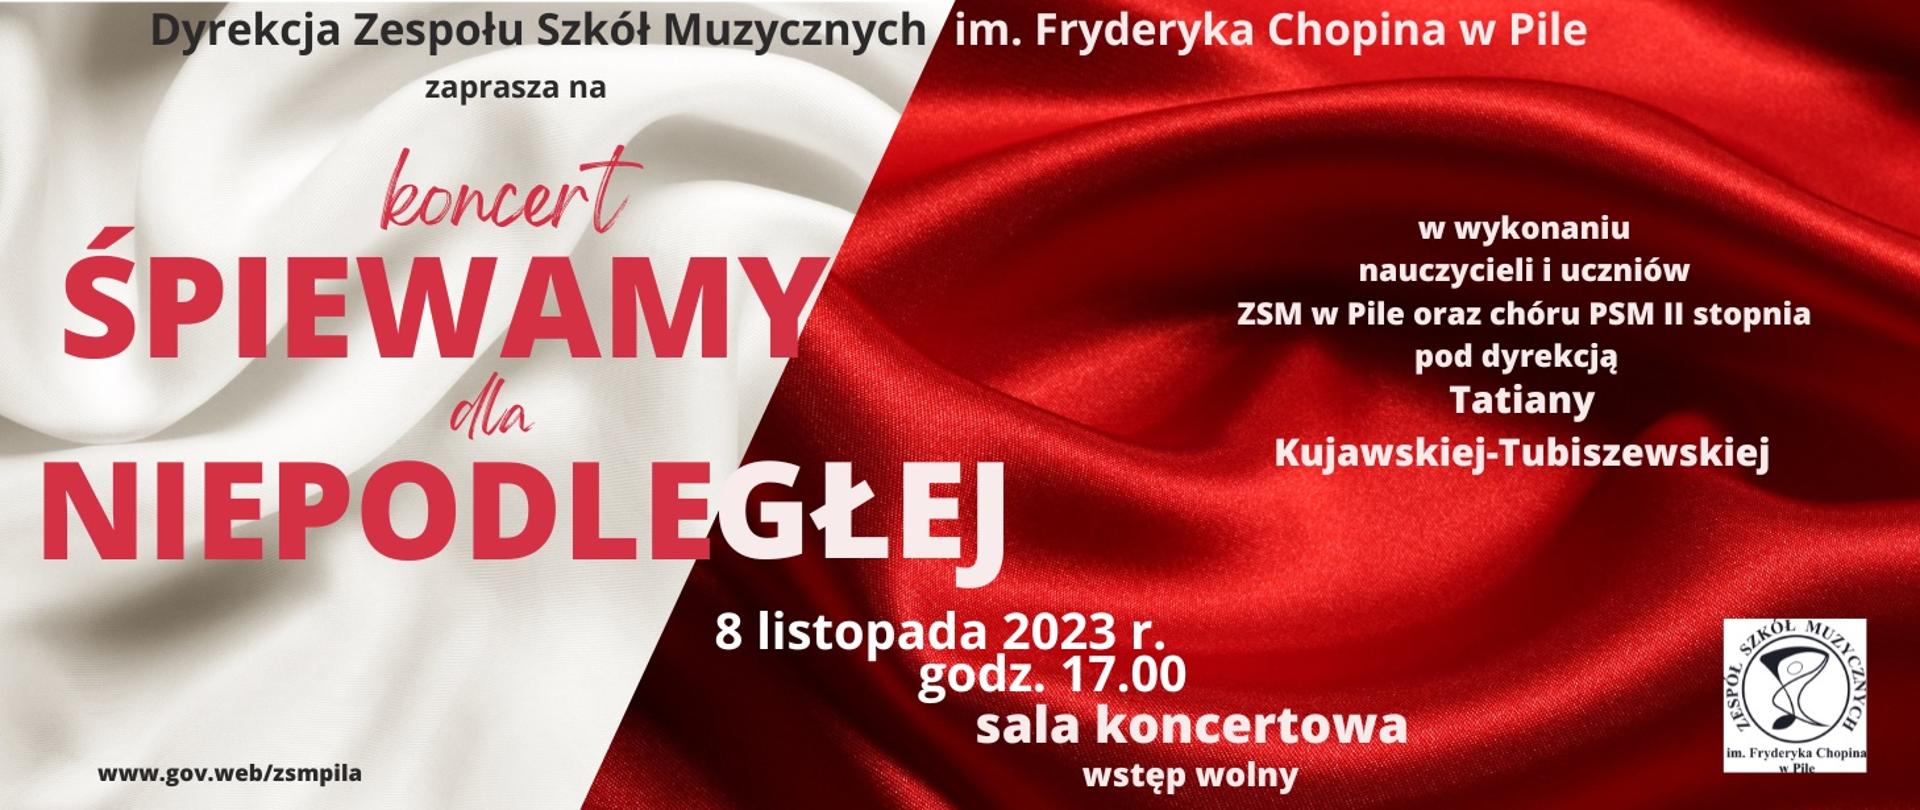 biało-czerwony materiał w tle, a na nim zaproszenie na koncert 8.11.2023 śpiewamy dla niepodległej w wykonaniu nauczycieli i uczniów